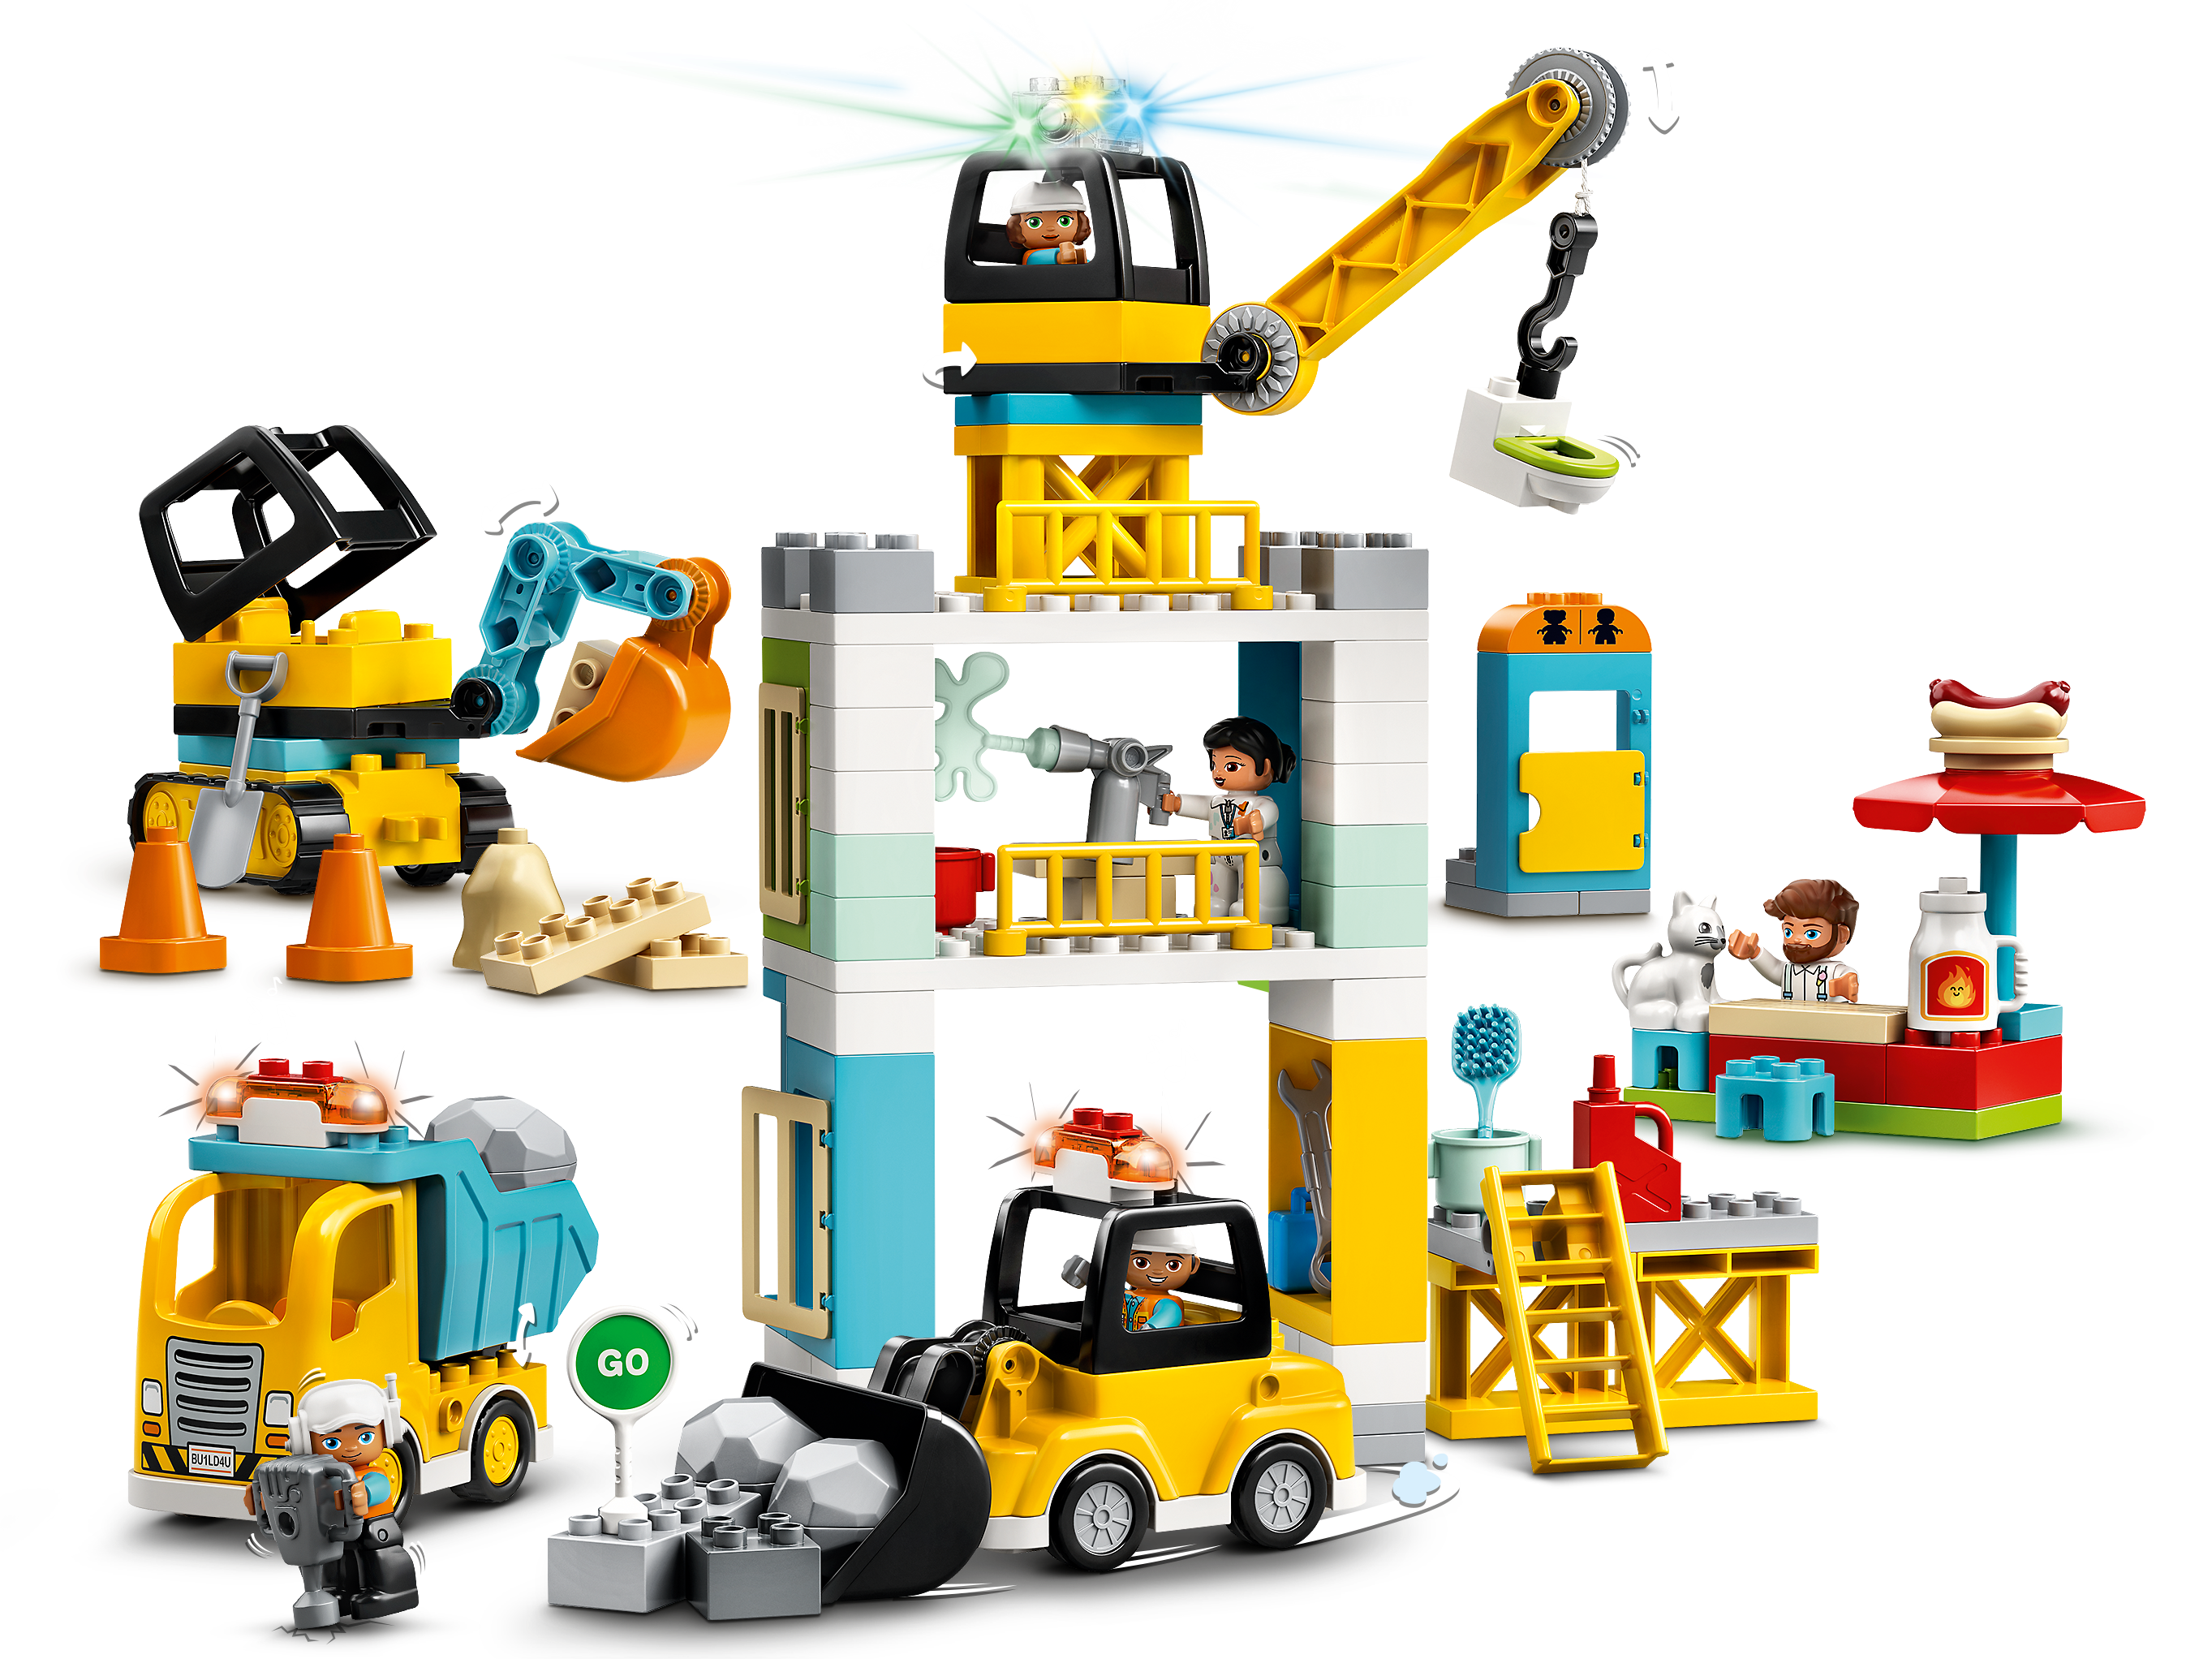 Duplo 2x Lego Duplo Construction Basic Plaque 2x8 Beige Pierre Set 5635 6157 5544 